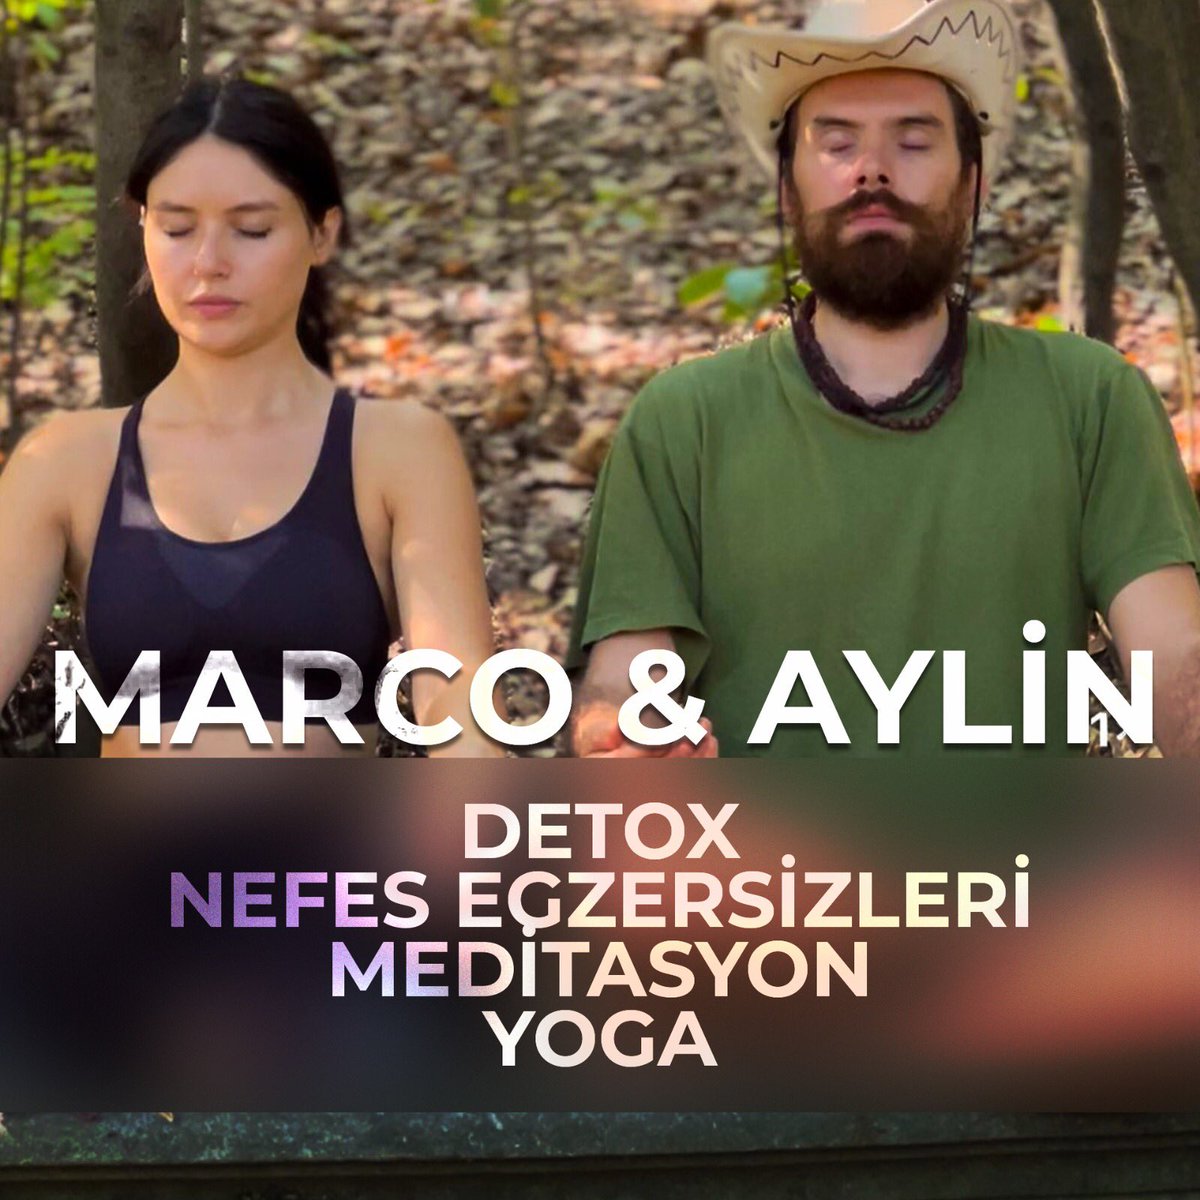 Detox Evreni’nde Marco ve Aylin eşliğinde zihninizi arındırın, bedeninizi canlandırın, ruhunuzu yenileyin! 

Detox Evreni - @detoxevreni 

Websitemizi incelemek için👇🏻
megareform.com.tr

#nefes #nefesegzersizi #meditasyon #yoga #yogapilates #nefesdanışmanlığı